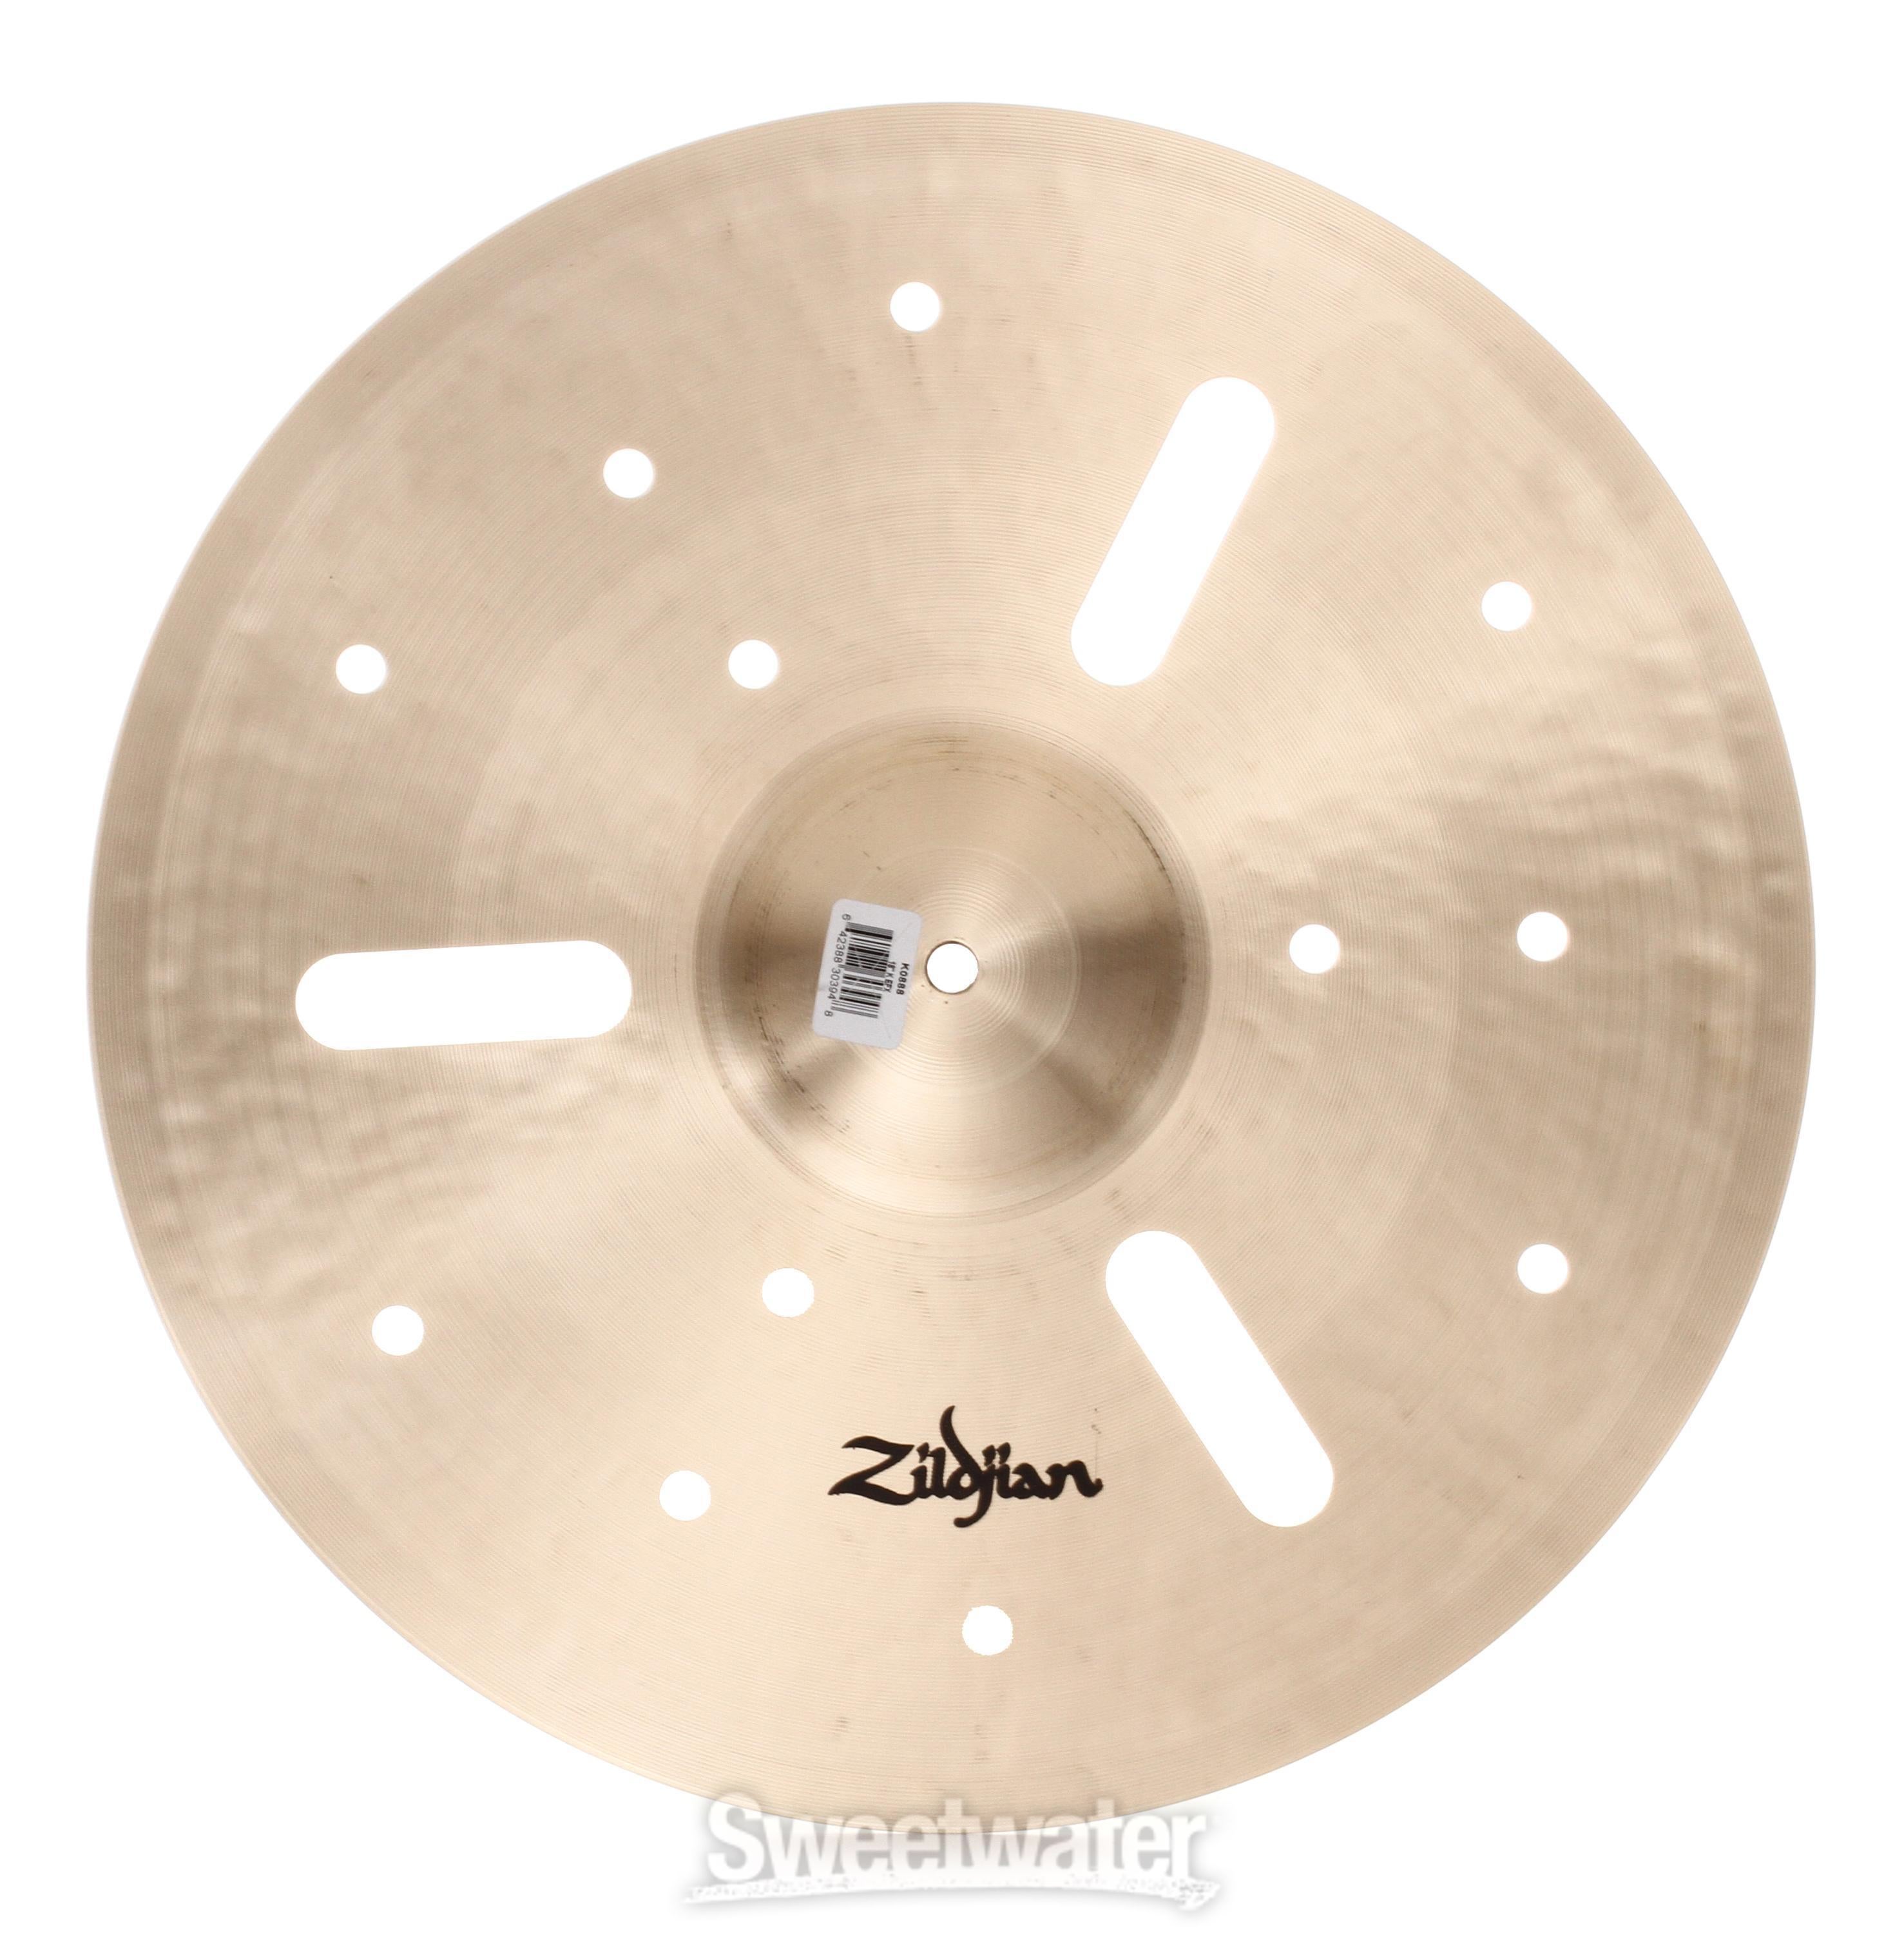 Zildjian 18 inch K Zildjian EFX Cymbal